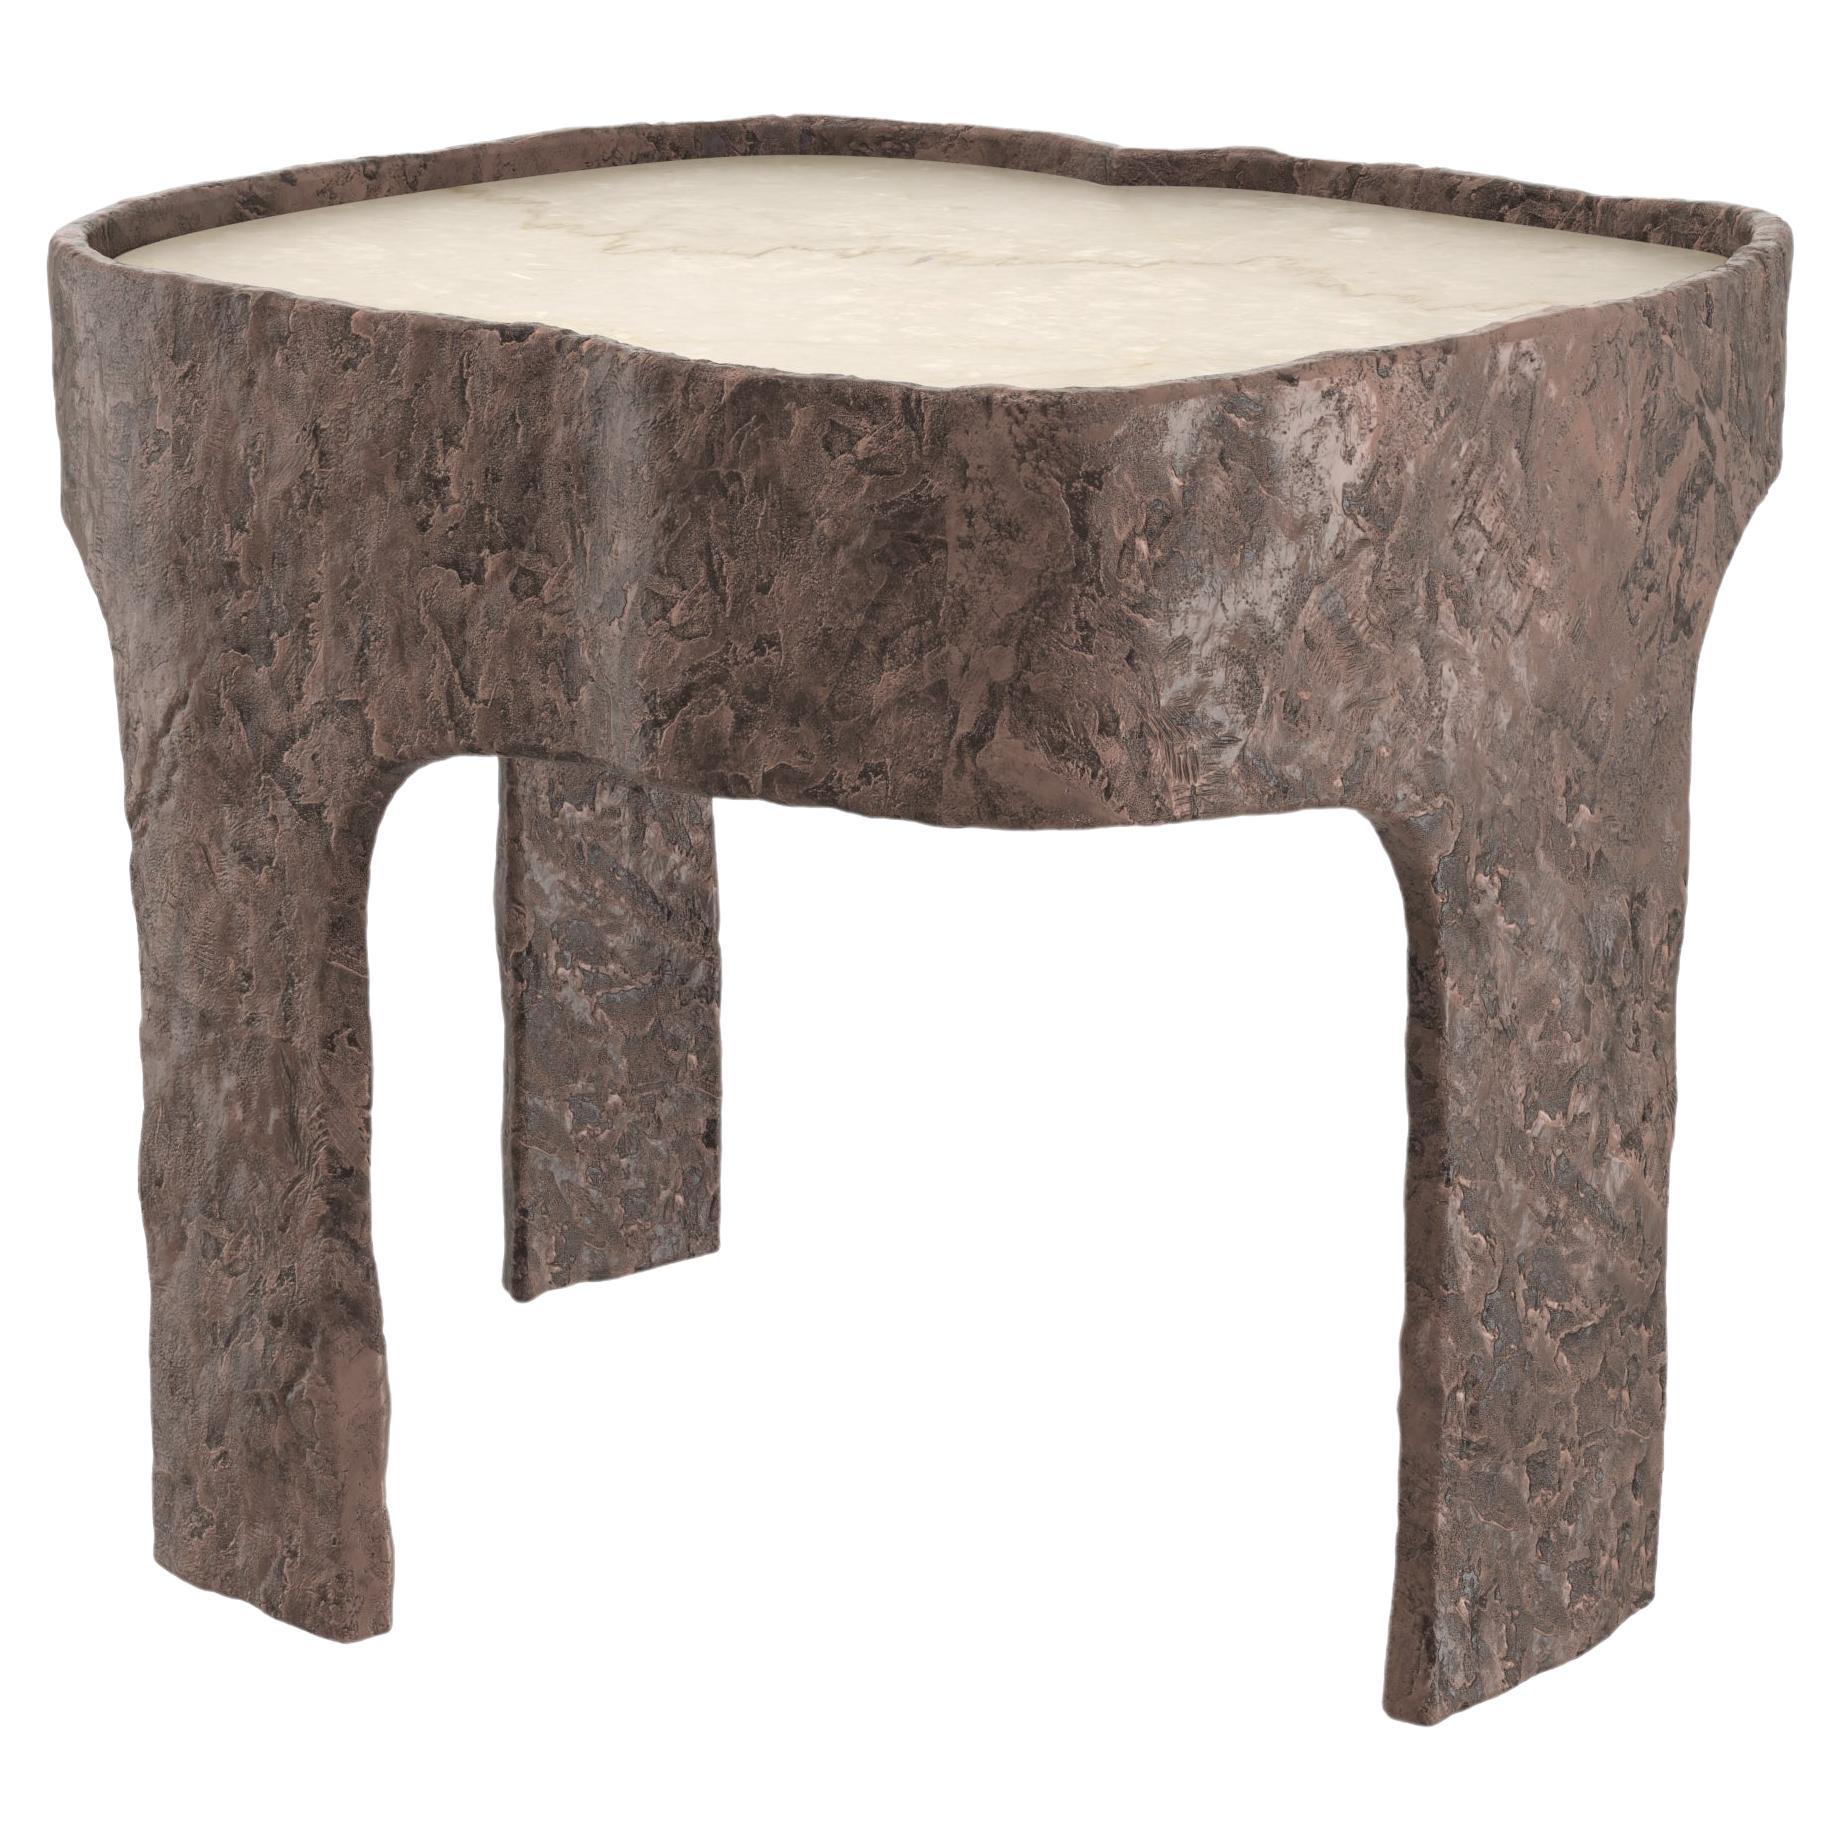 Marmor-Bronze-Tisch Sumatra V1 von Edizione Limitata, limitierte Auflage